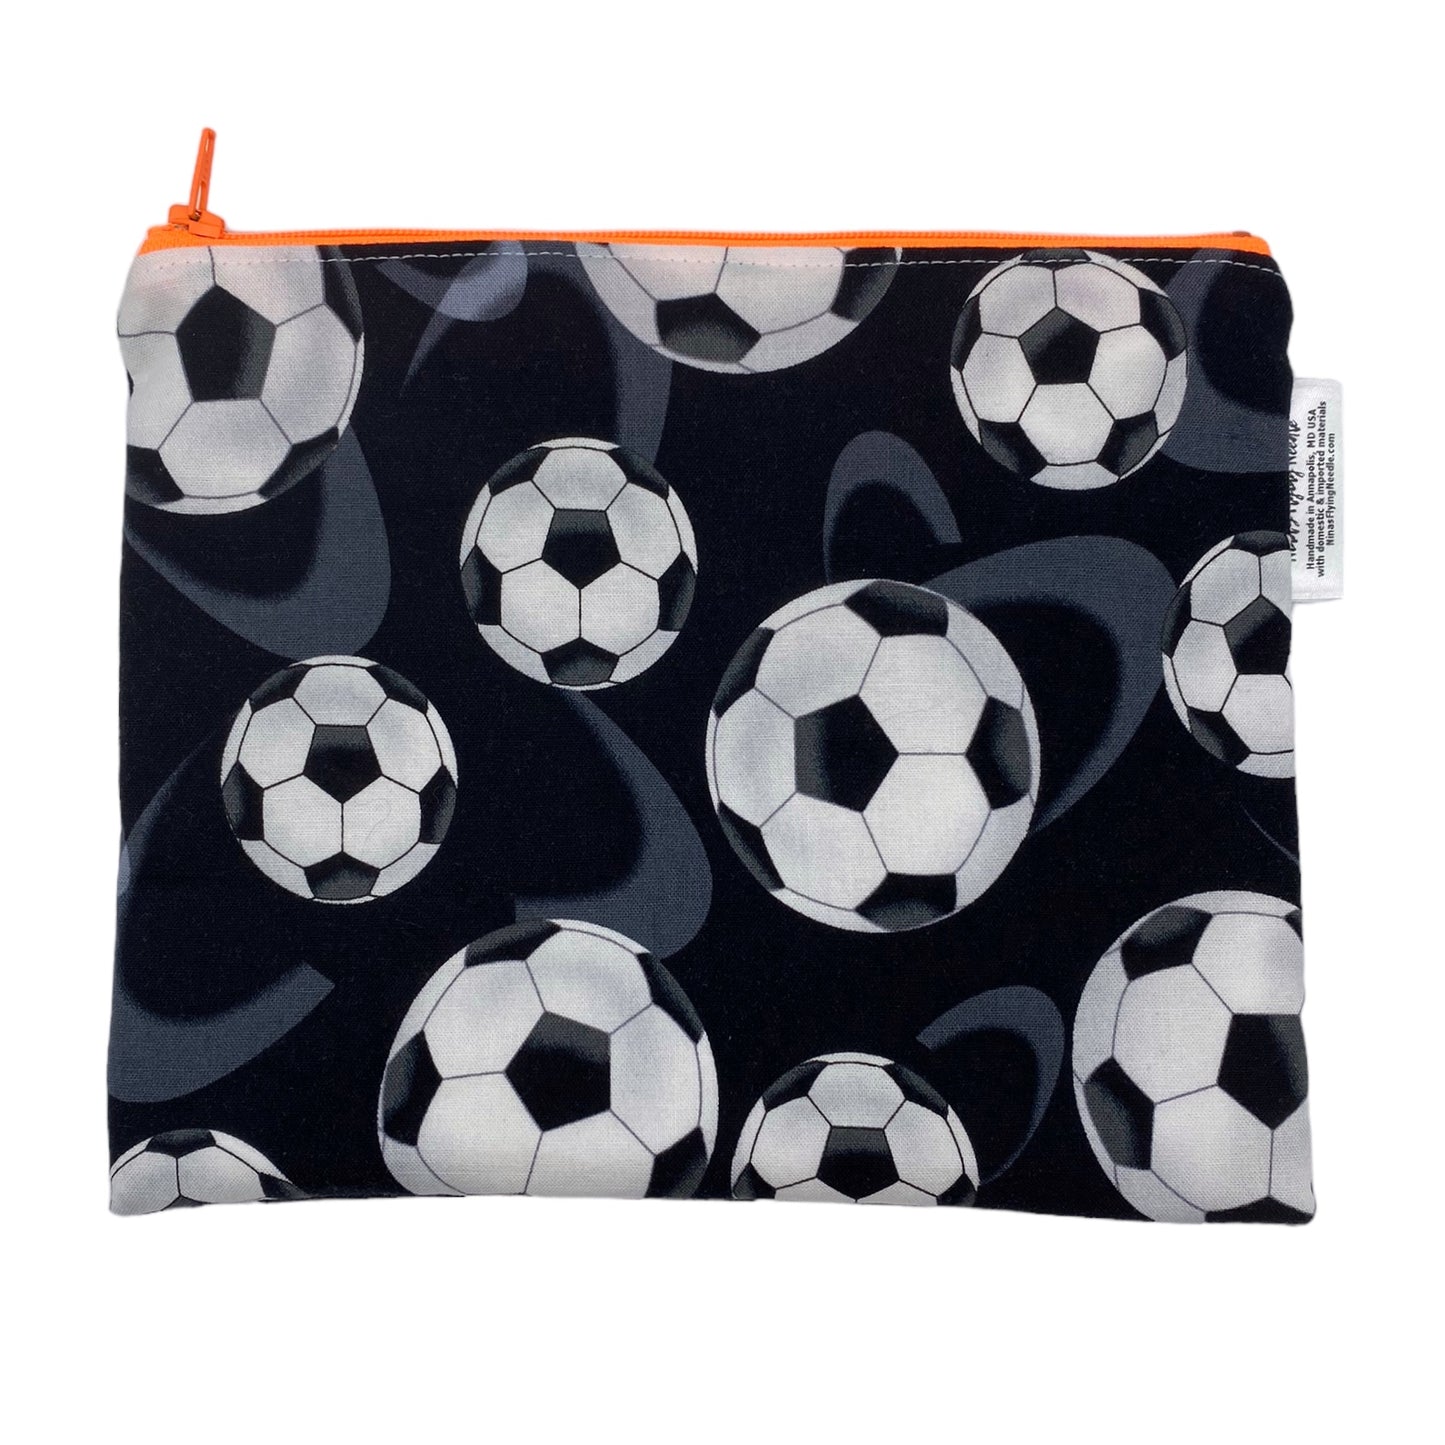 Sandwich Sized Reusable Zippered Bag Soccer Balls